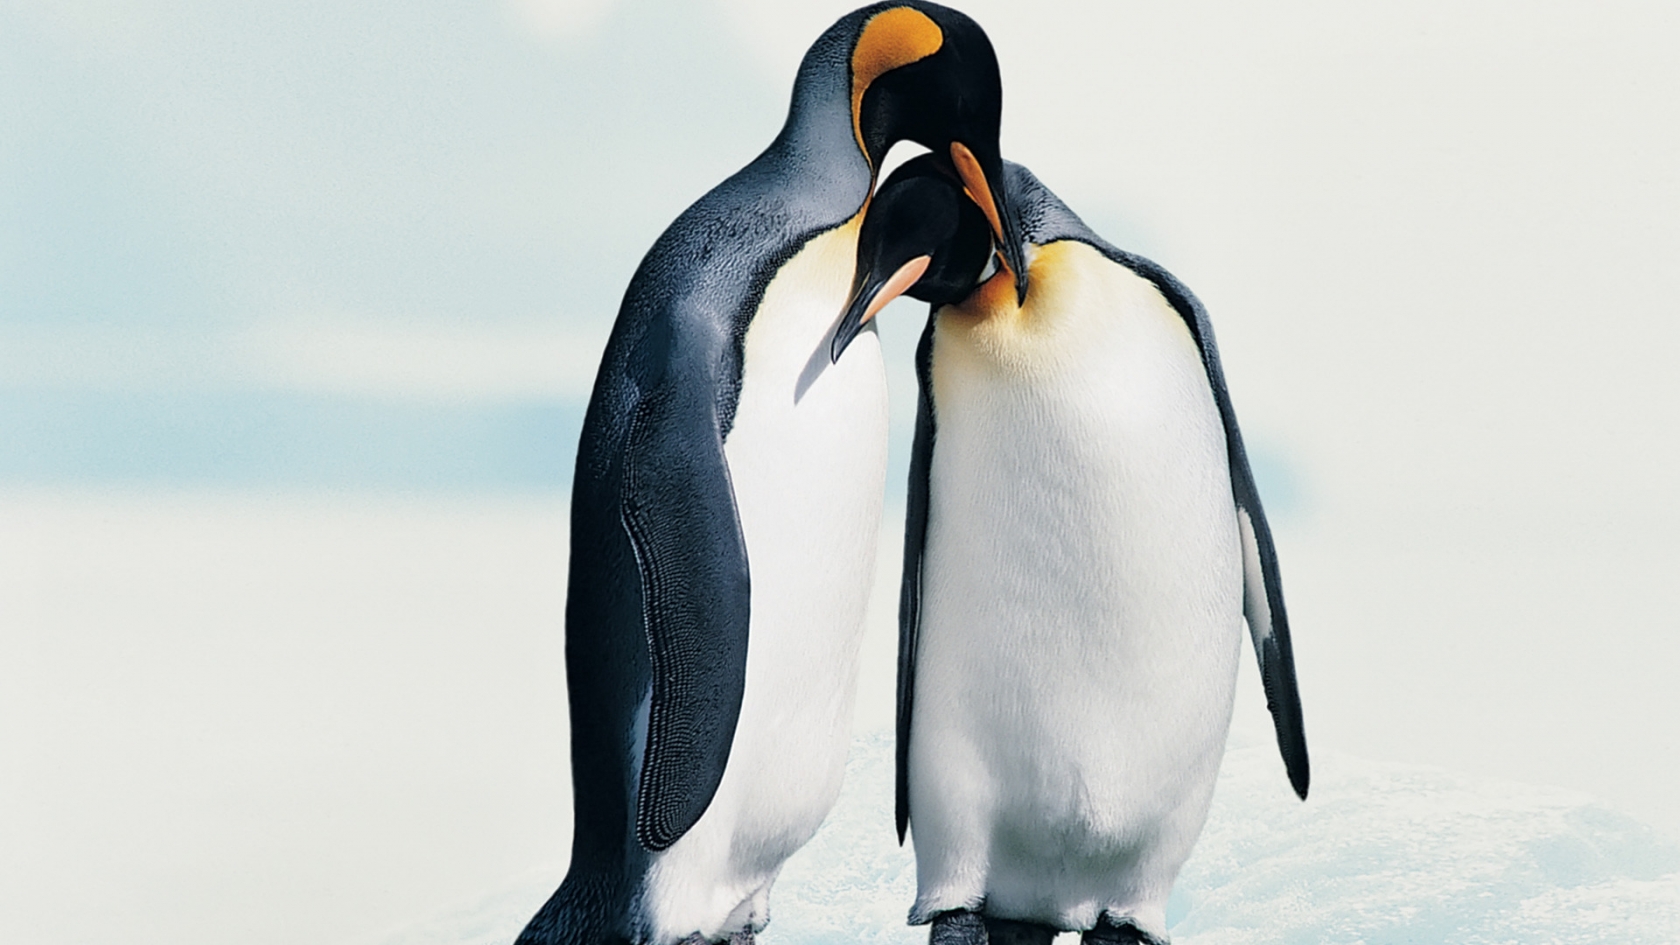 Penguins in Love for 1680 x 945 HDTV resolution